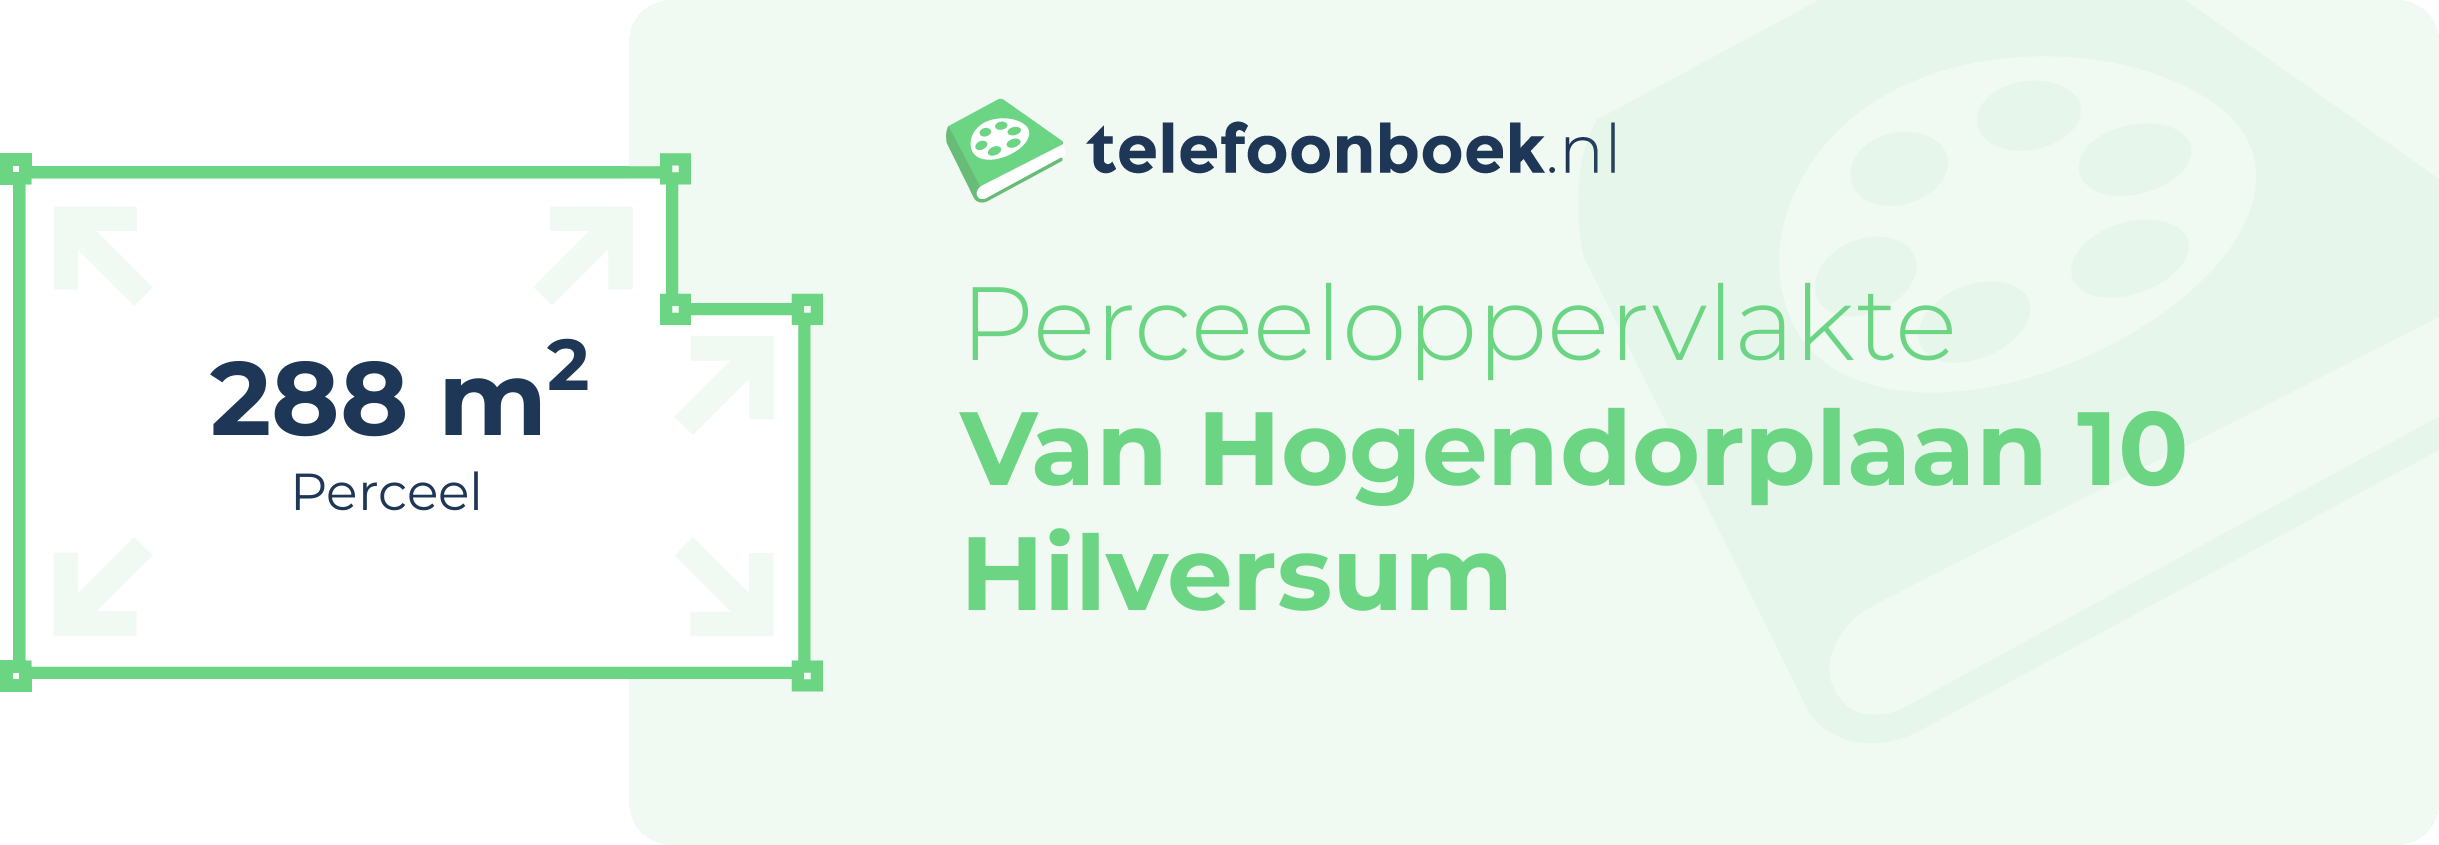 Perceeloppervlakte Van Hogendorplaan 10 Hilversum